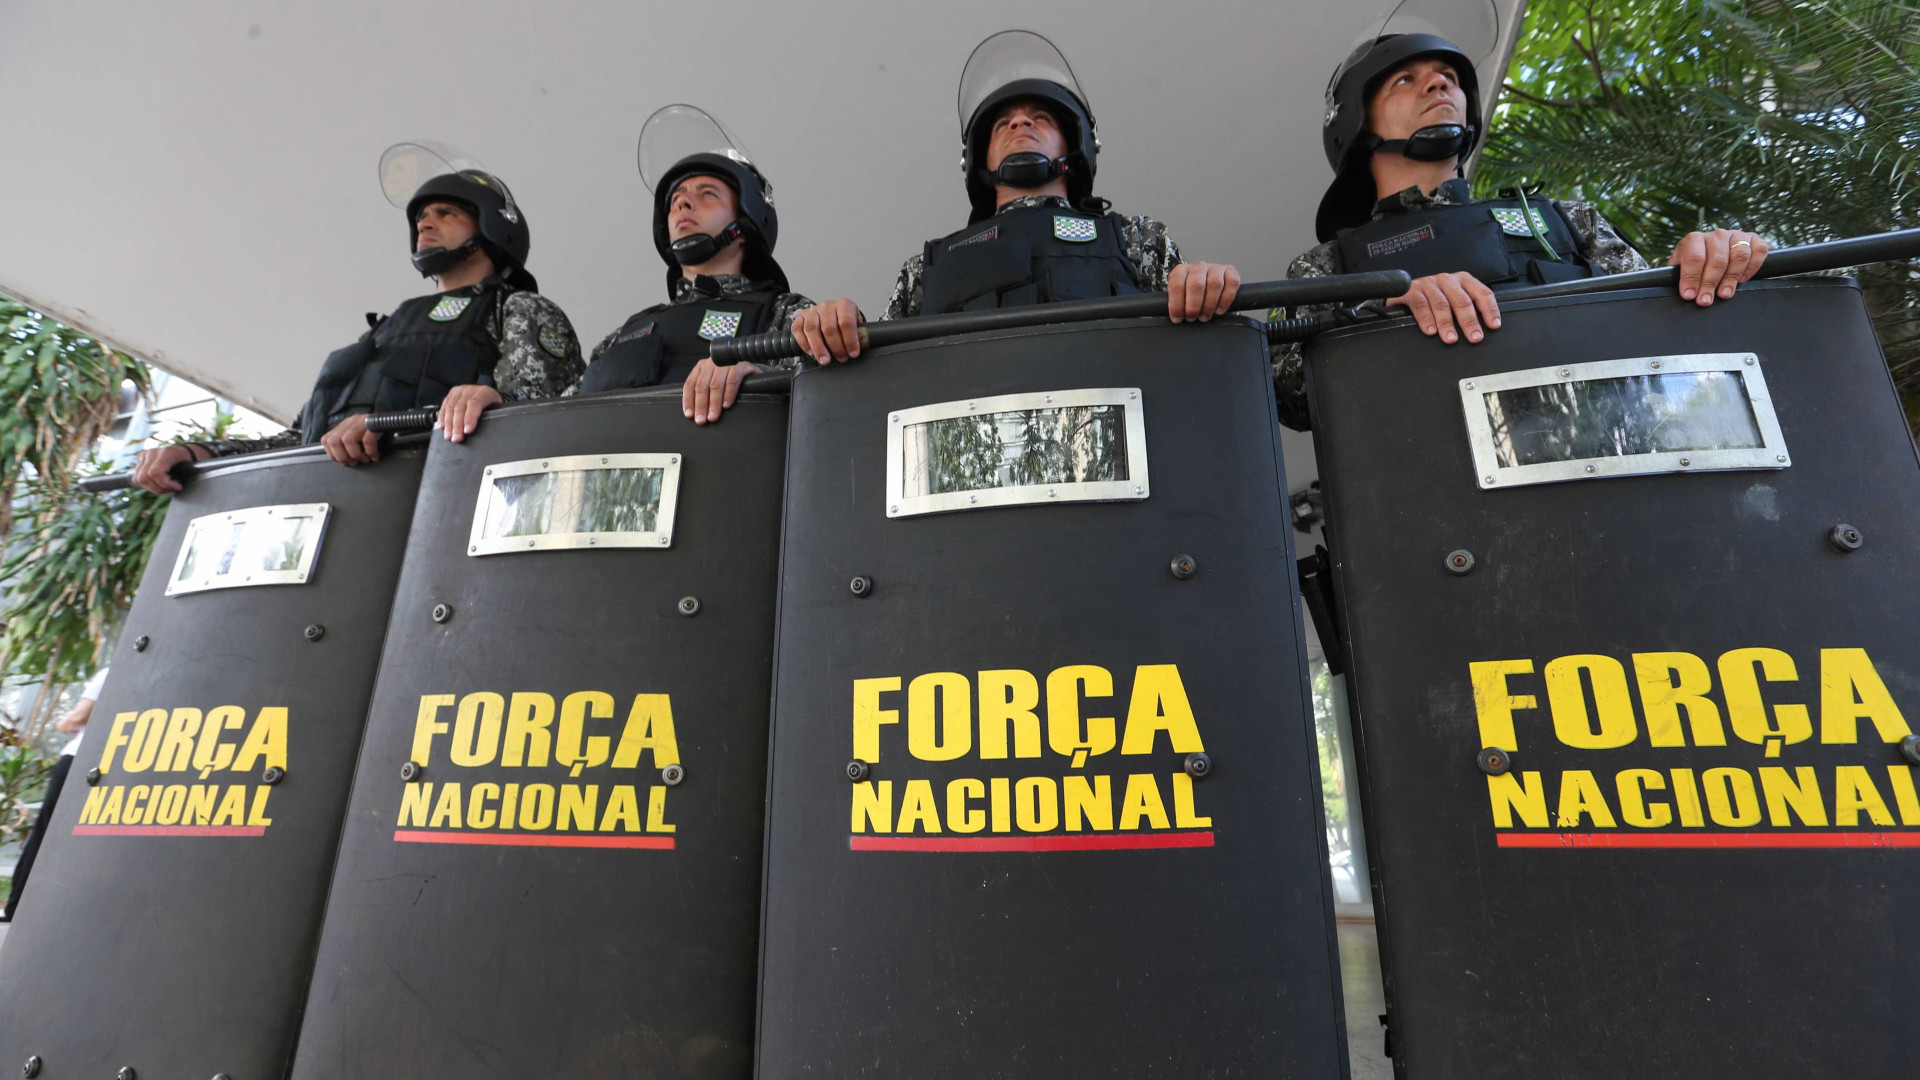 Prorrogada presença da Força Nacional em terra indígena em Mato Grosso